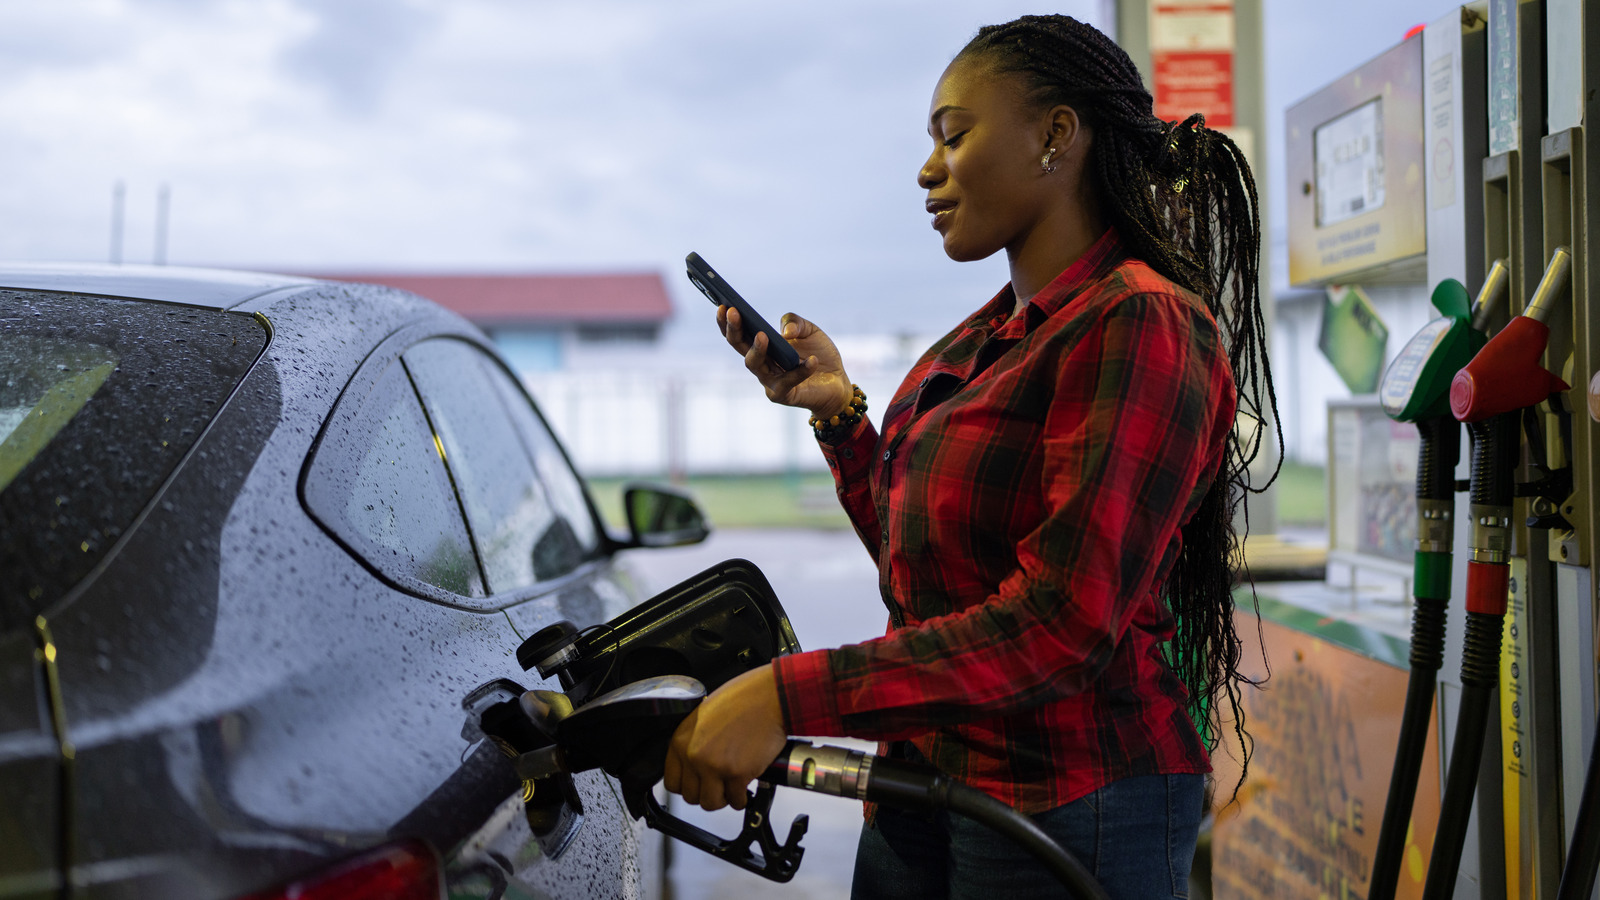 ¿Por qué hay señales de advertencia sobre el uso del teléfono celular mientras se bombea gasolina?